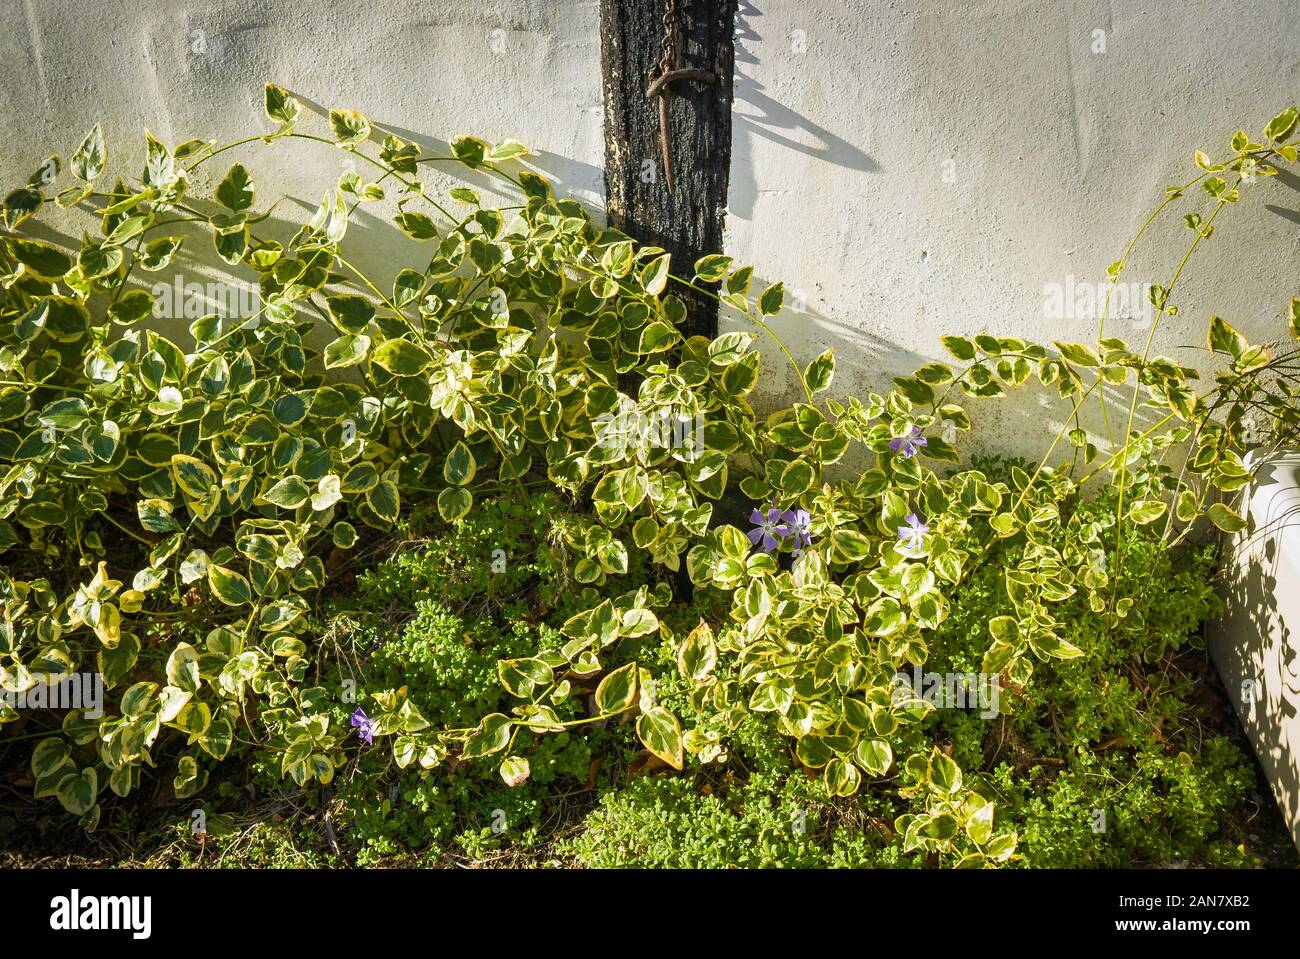 Bunte immergrün Vinca bietet einen willkommenen Hauch von Farbe und Interesse in den Wintermonaten in einem Englischen Garten Stockfoto